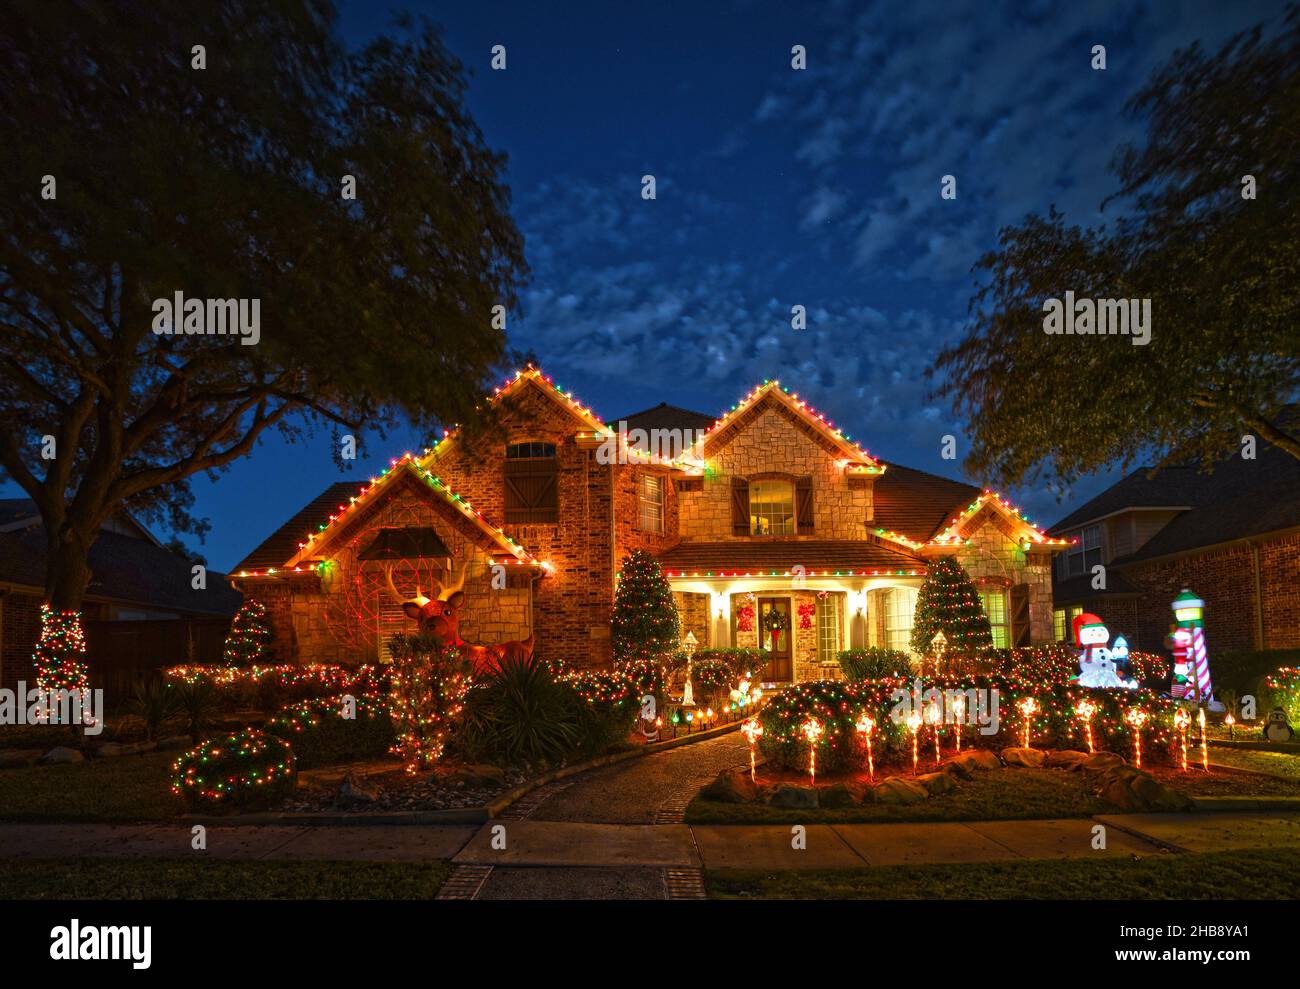 Residencias decoradas con luces de Navidad para la temporada de Navidad. Foto de stock